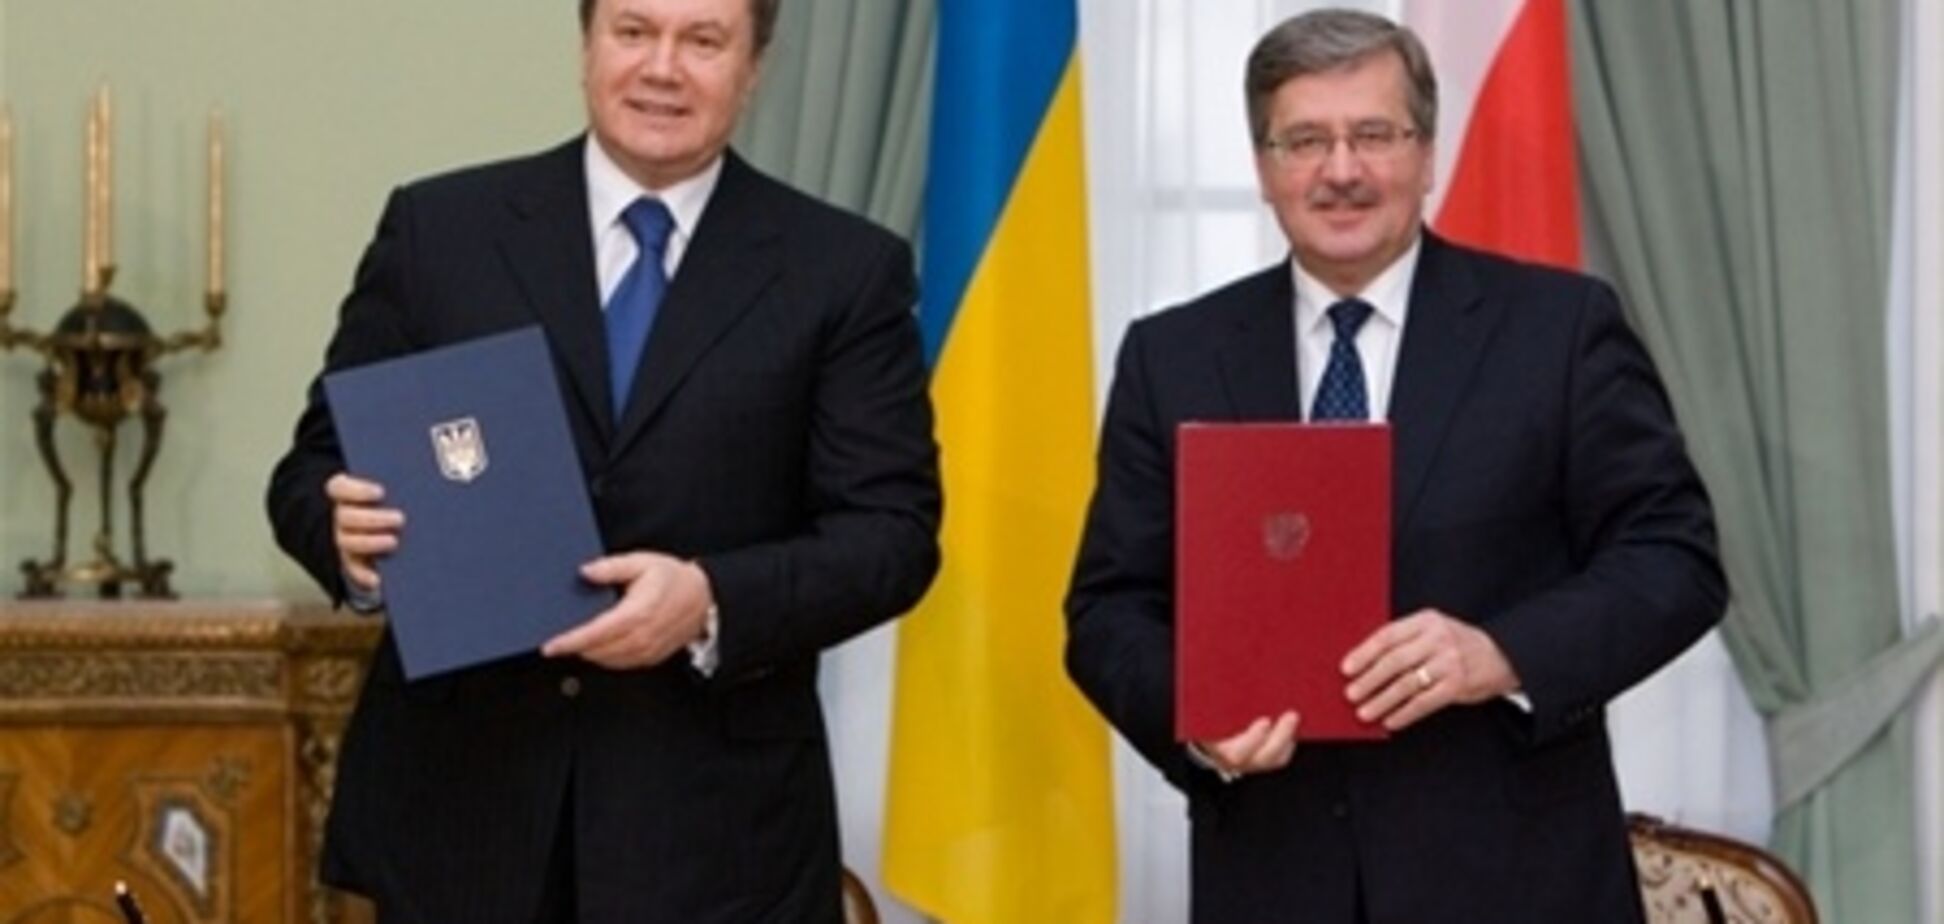 В Польше разговор Коморовского с Януковичем оказался засекреченным